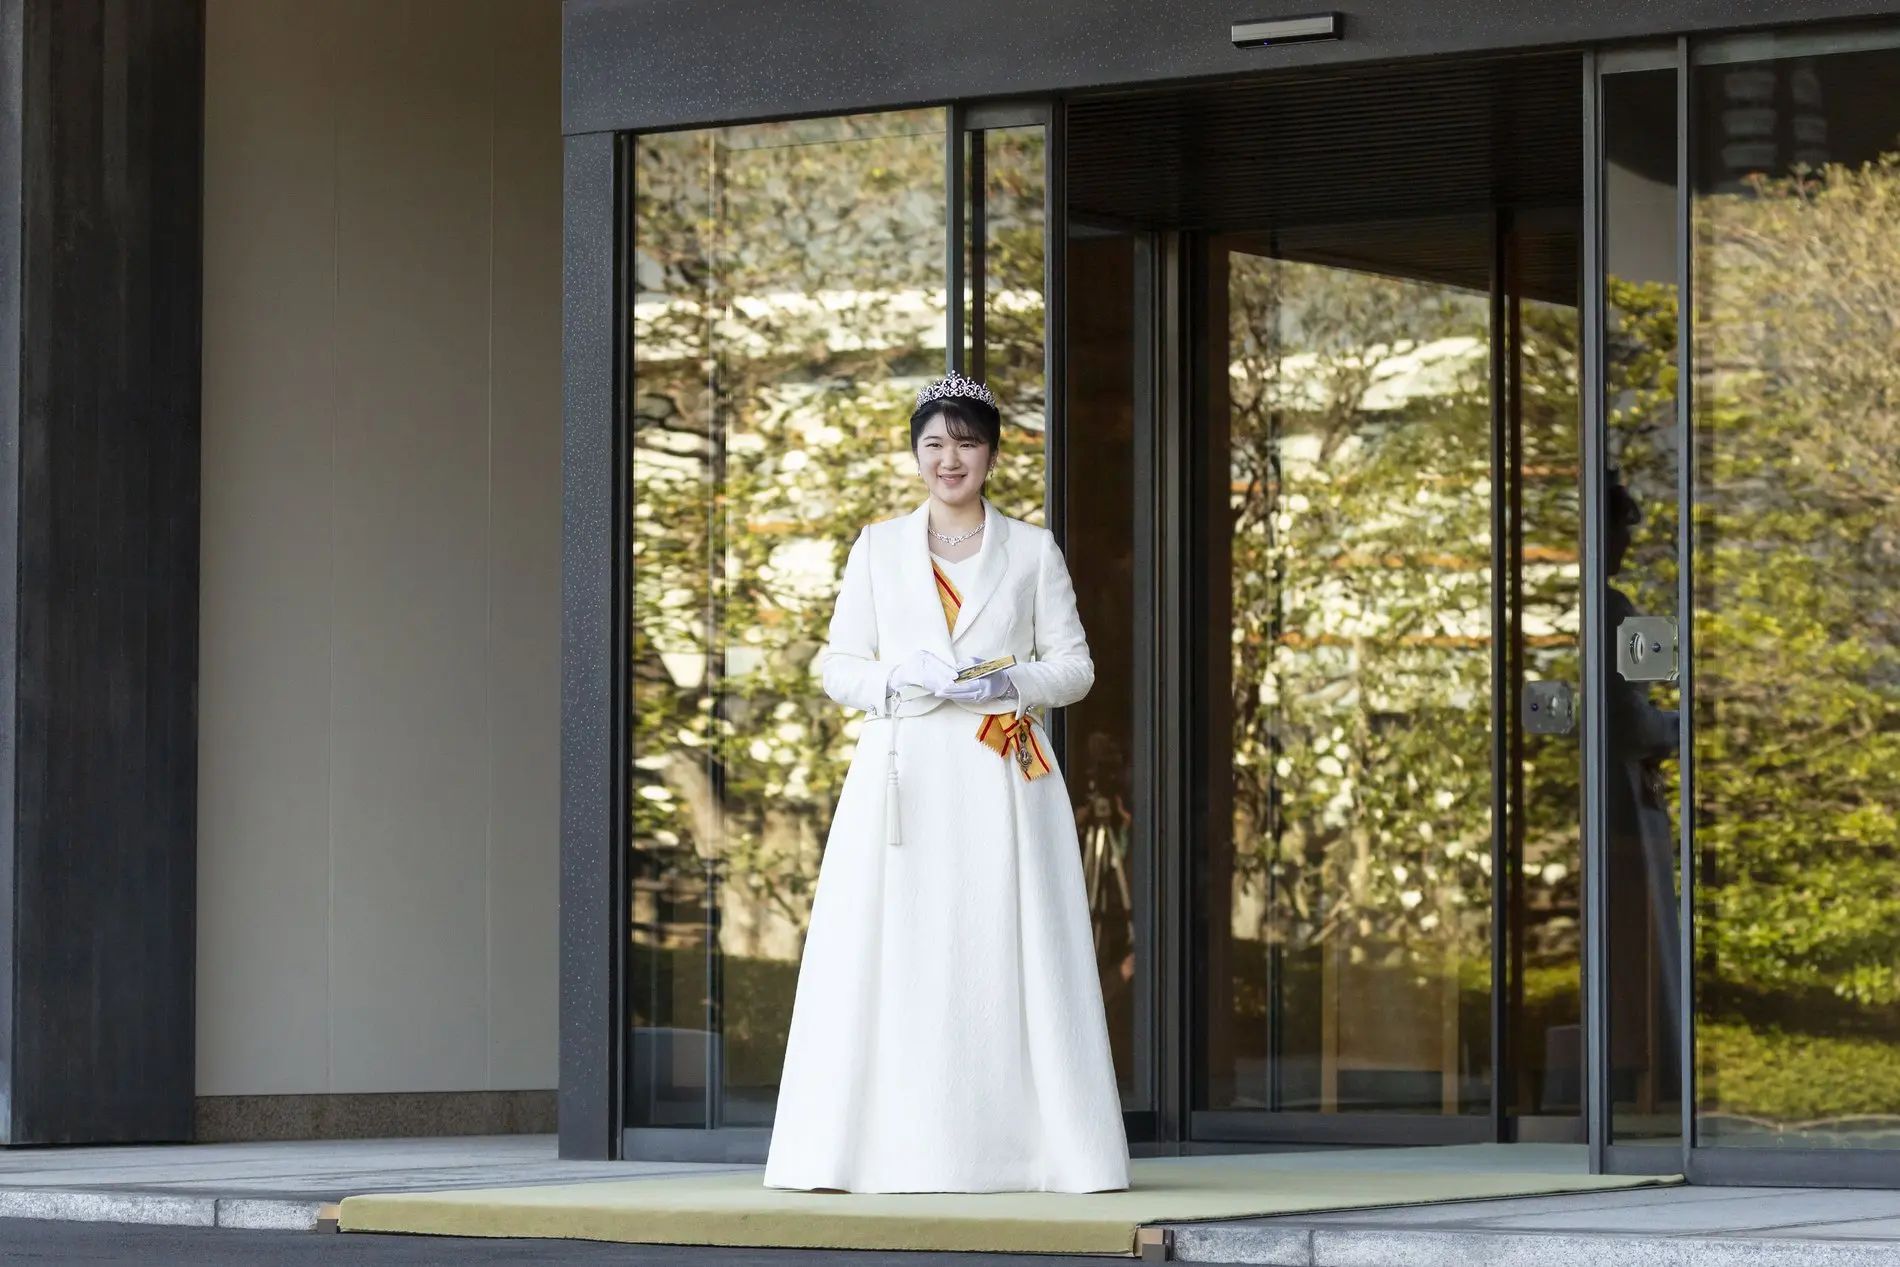 Zu sehen ist die japanische Prinzessin Aiko. Sie steht in einem weißen Kleid vor einer großen Glastür und lächelt in die Kamera.